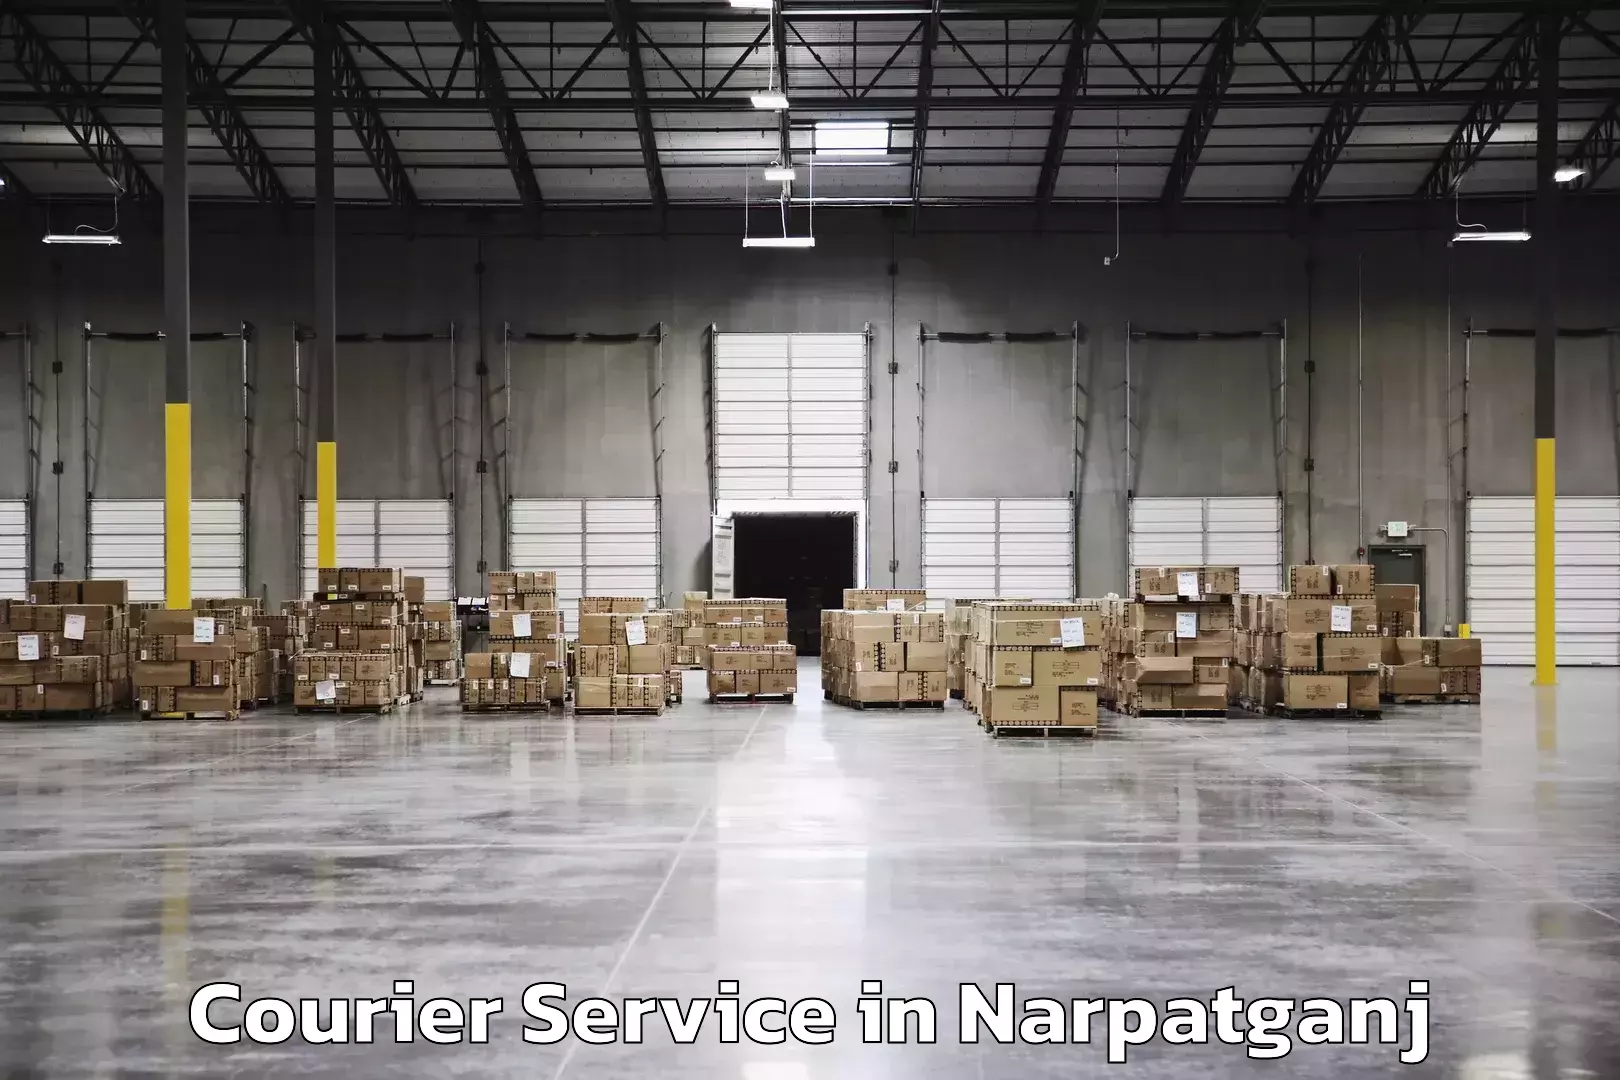 Nationwide parcel services in Narpatganj